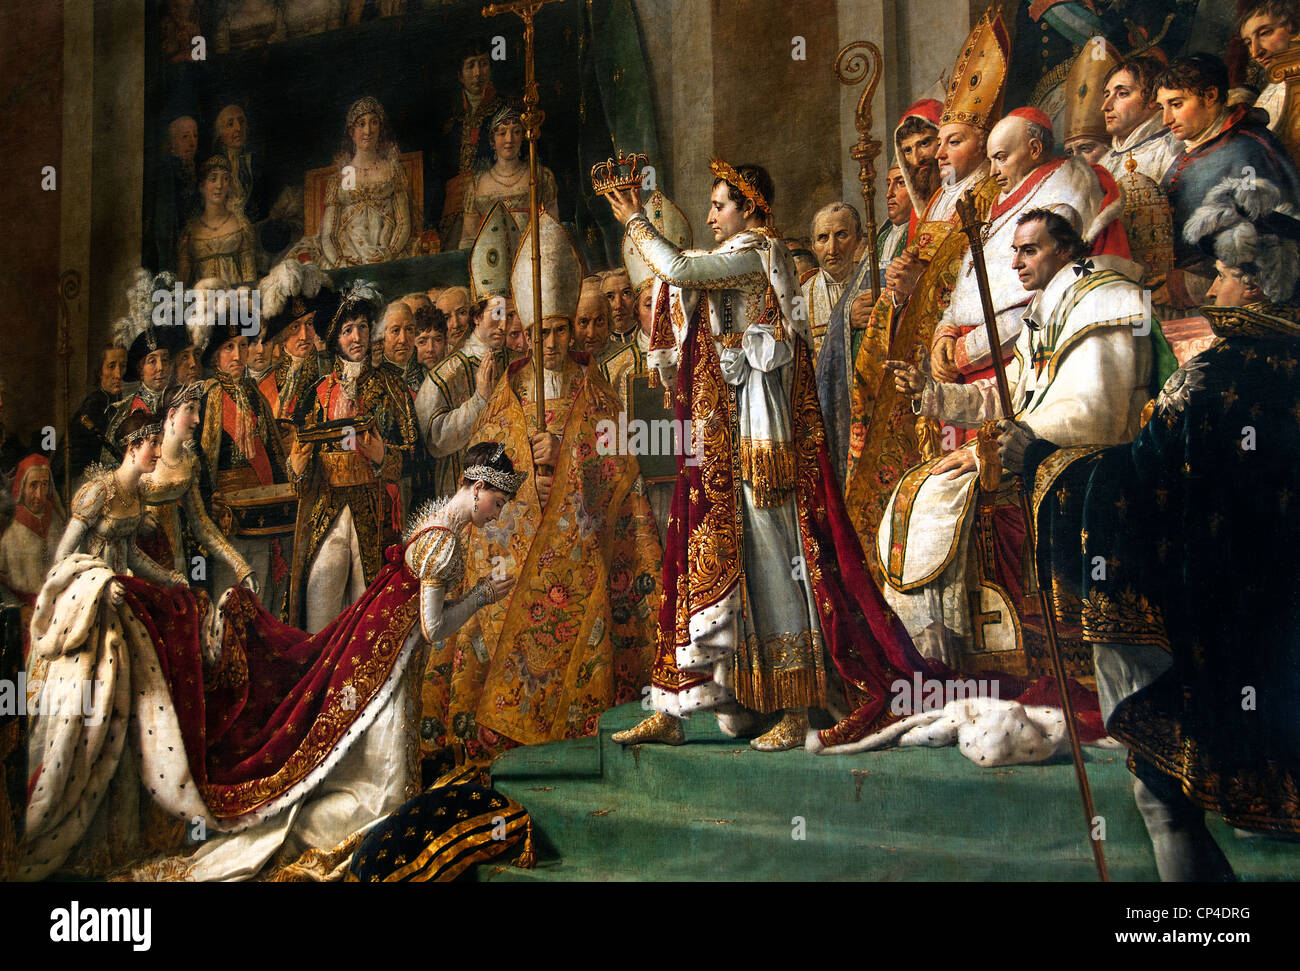 La coronación - Consagración del Emperador Napoleón Bonaparte y Josefina  1807 La Catedral de Notre Dame Paris Jacques-Louis David 1748 - 1825  Francia Fotografía de stock - Alamy